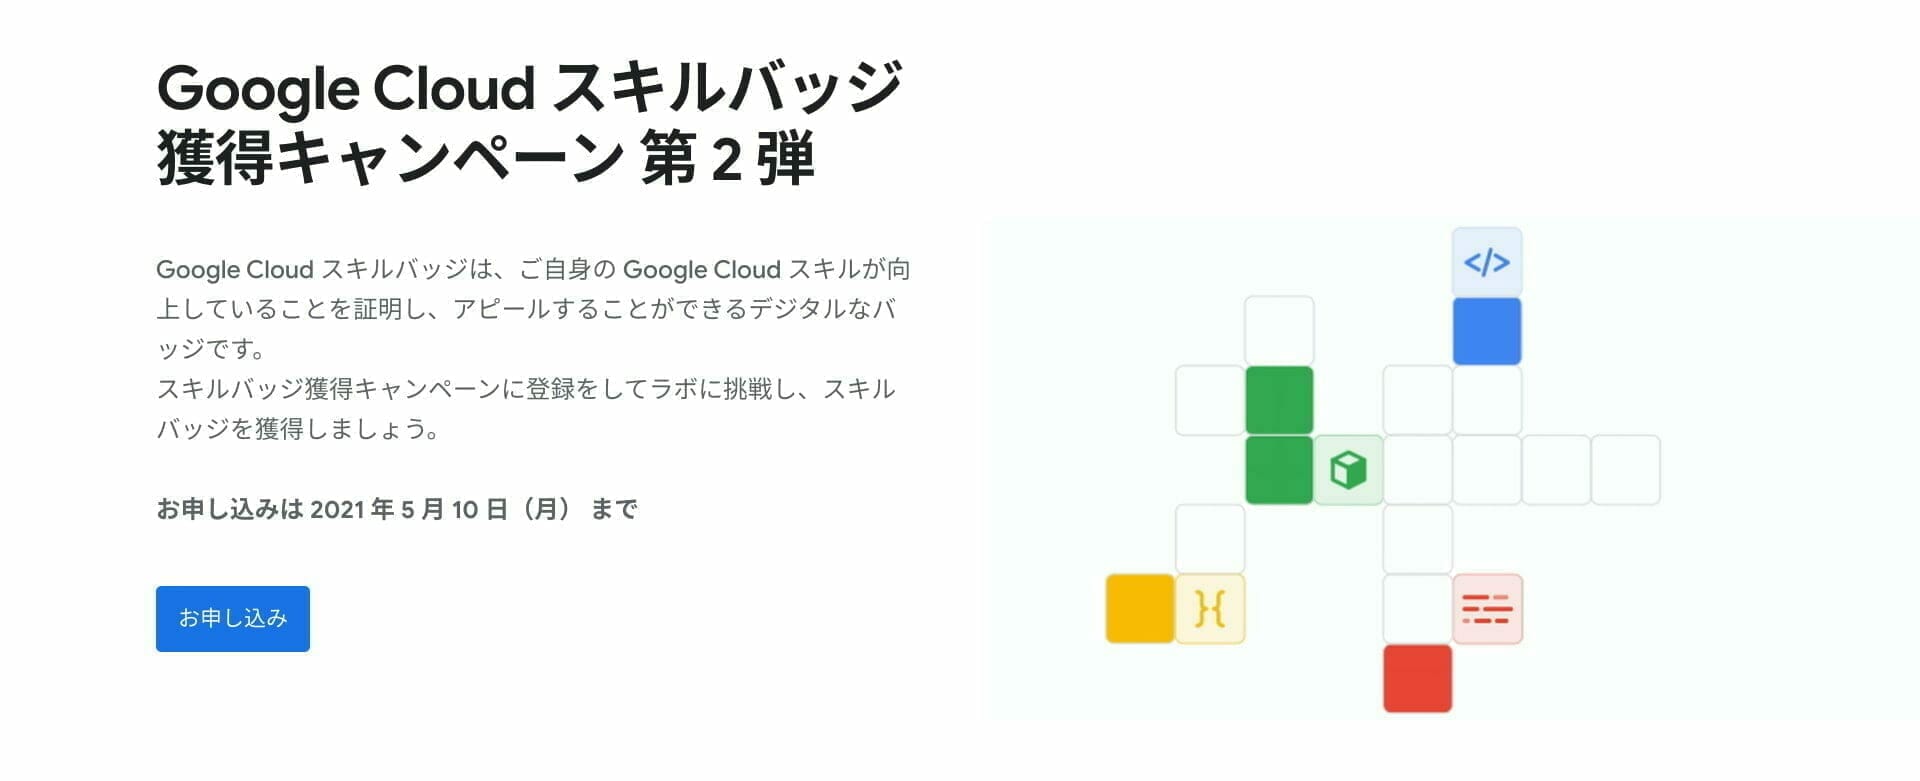 [GCP] Google Cloud スキルバッジ 獲得キャンペーン 第 2 弾